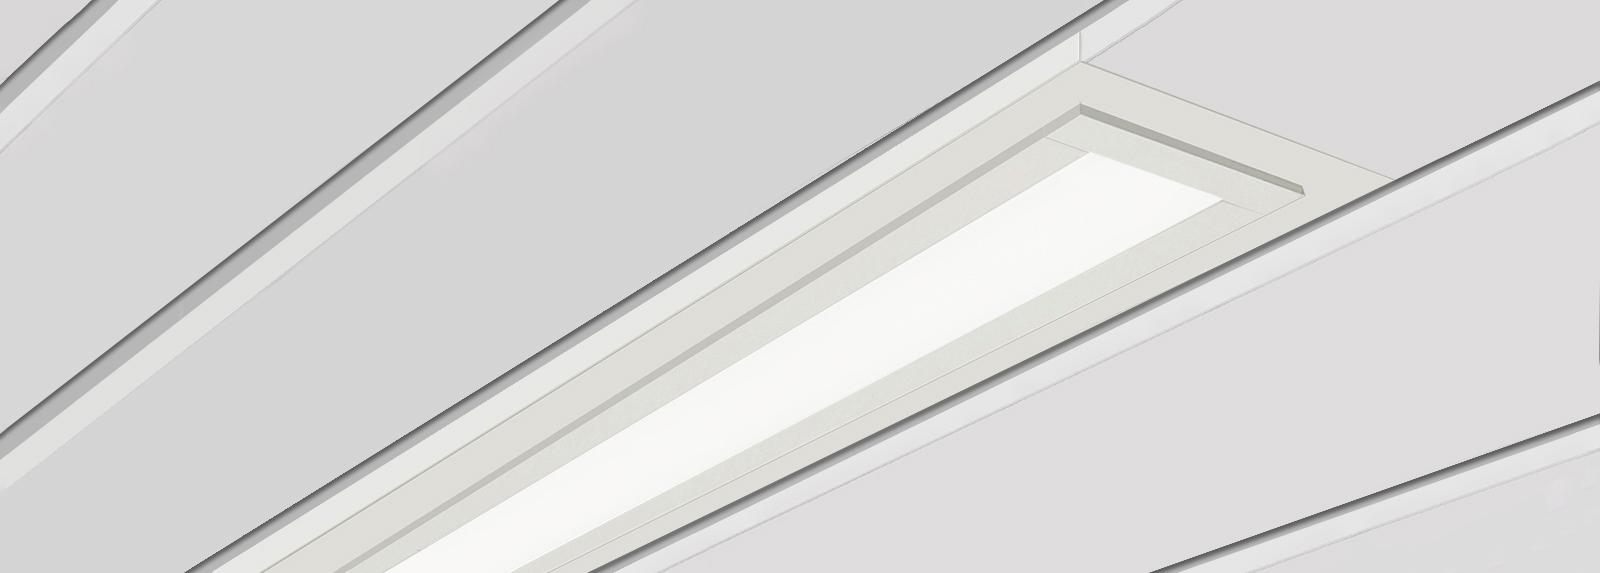 GEOR 100 | Downlights lineals encastats per a la substitució de lluminàries